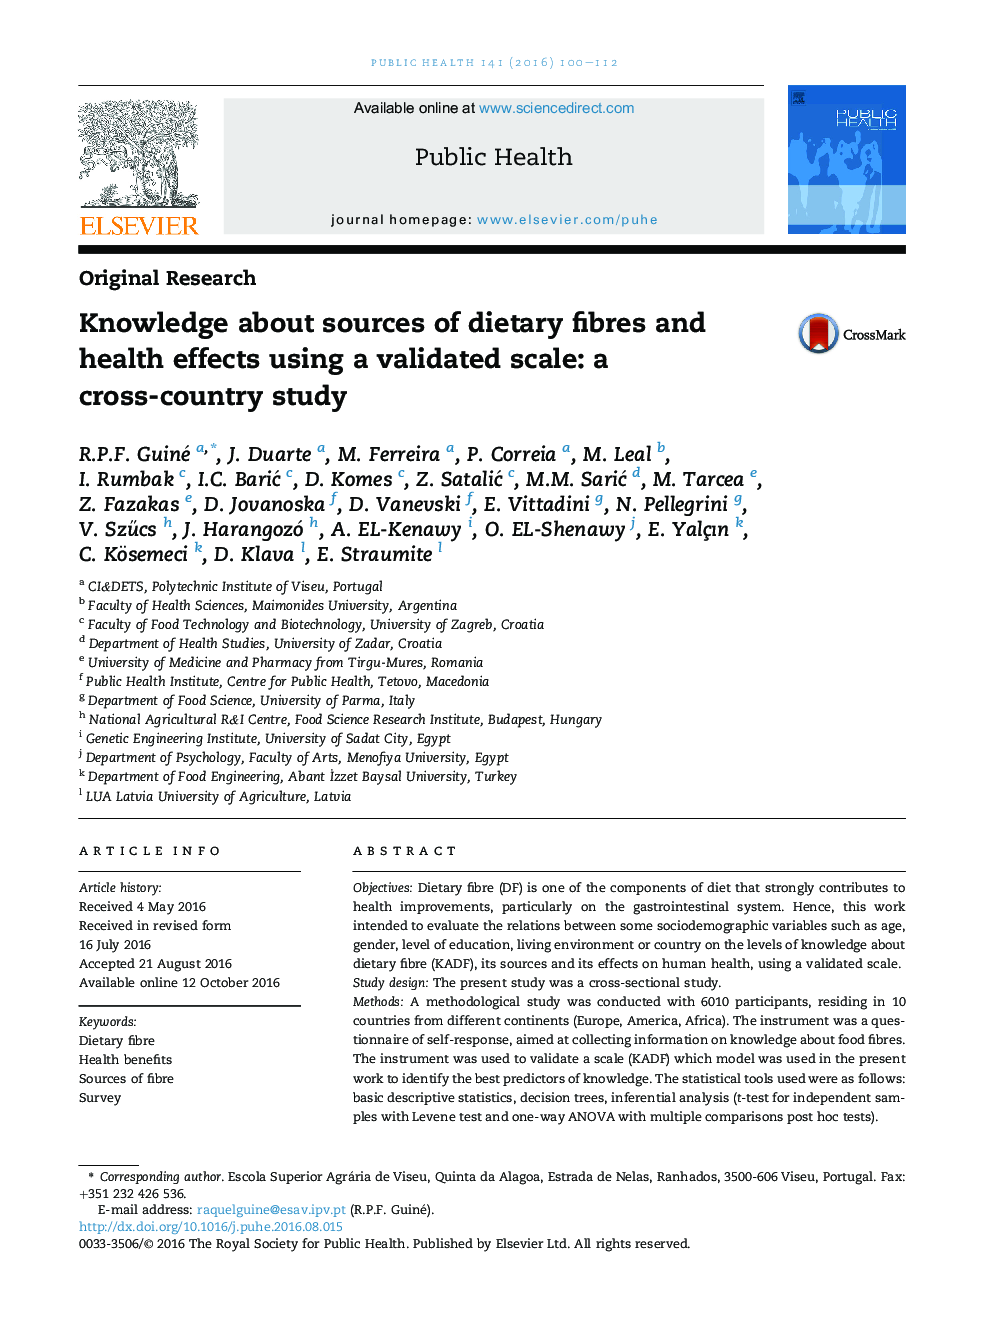 دانش در مورد منابع الیاف رژیمی و اثرات بهداشتی با استفاده از یک مقیاس معتبر: یک مطالعه در سطح بین المللی 